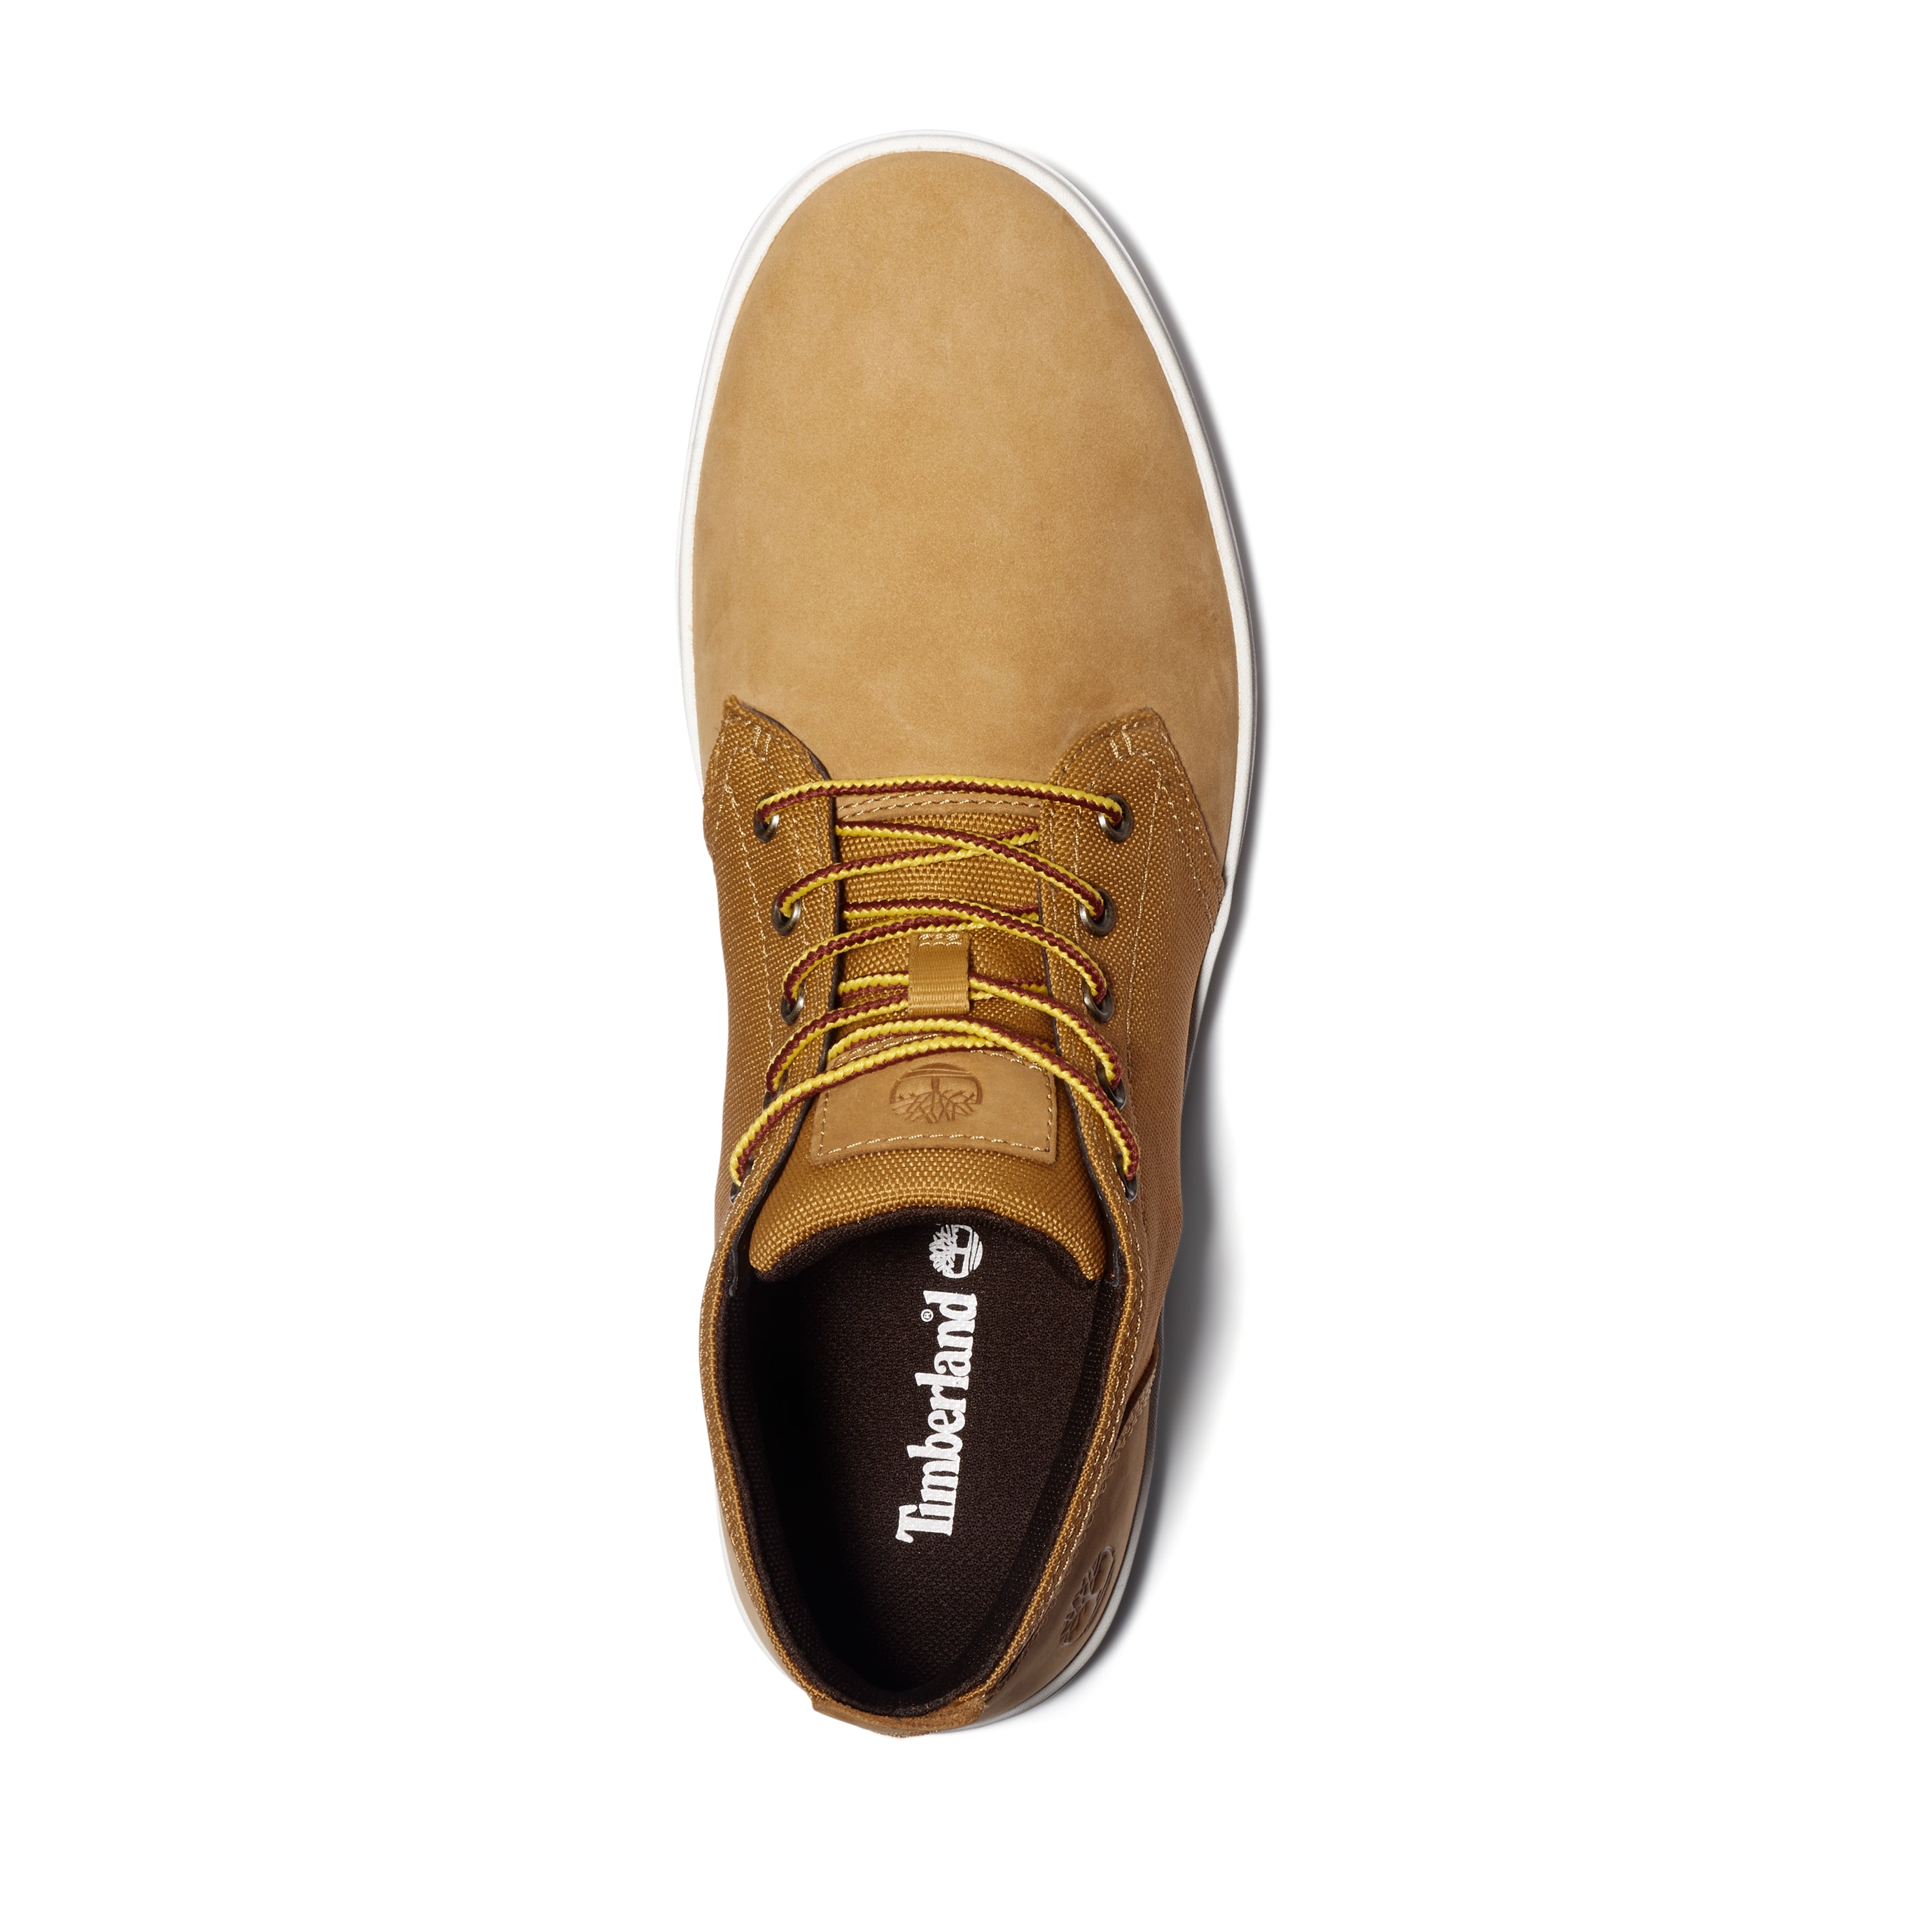 Timberland | Shoes | Timberland Supaway Chukka Wheat Nubuck Yellow White  Mens Shoe Tb A2m9p 23 | Poshmark